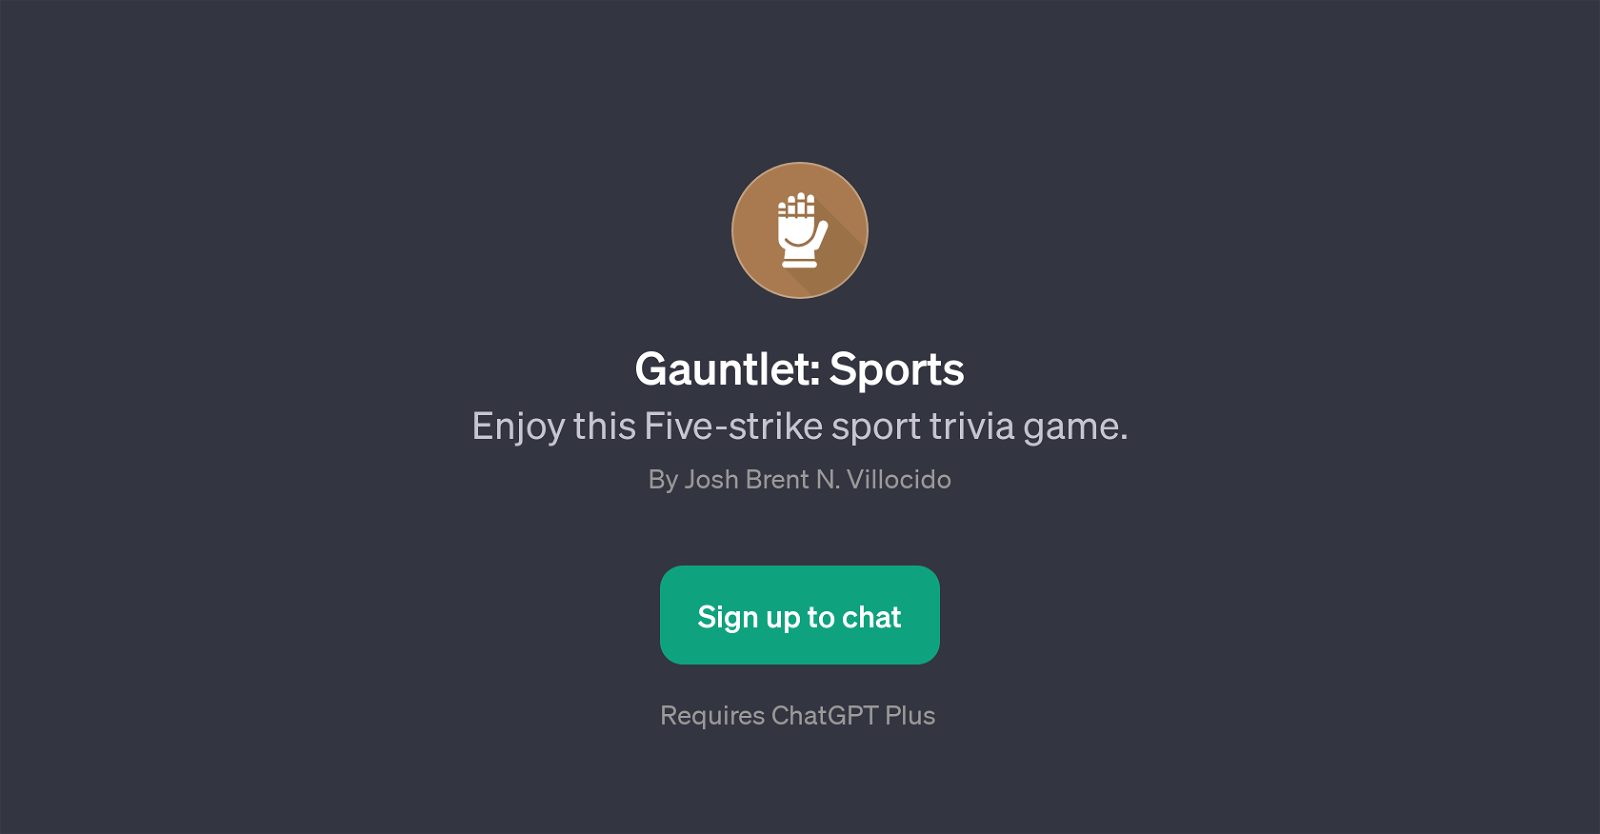 Gauntlet: Sports website